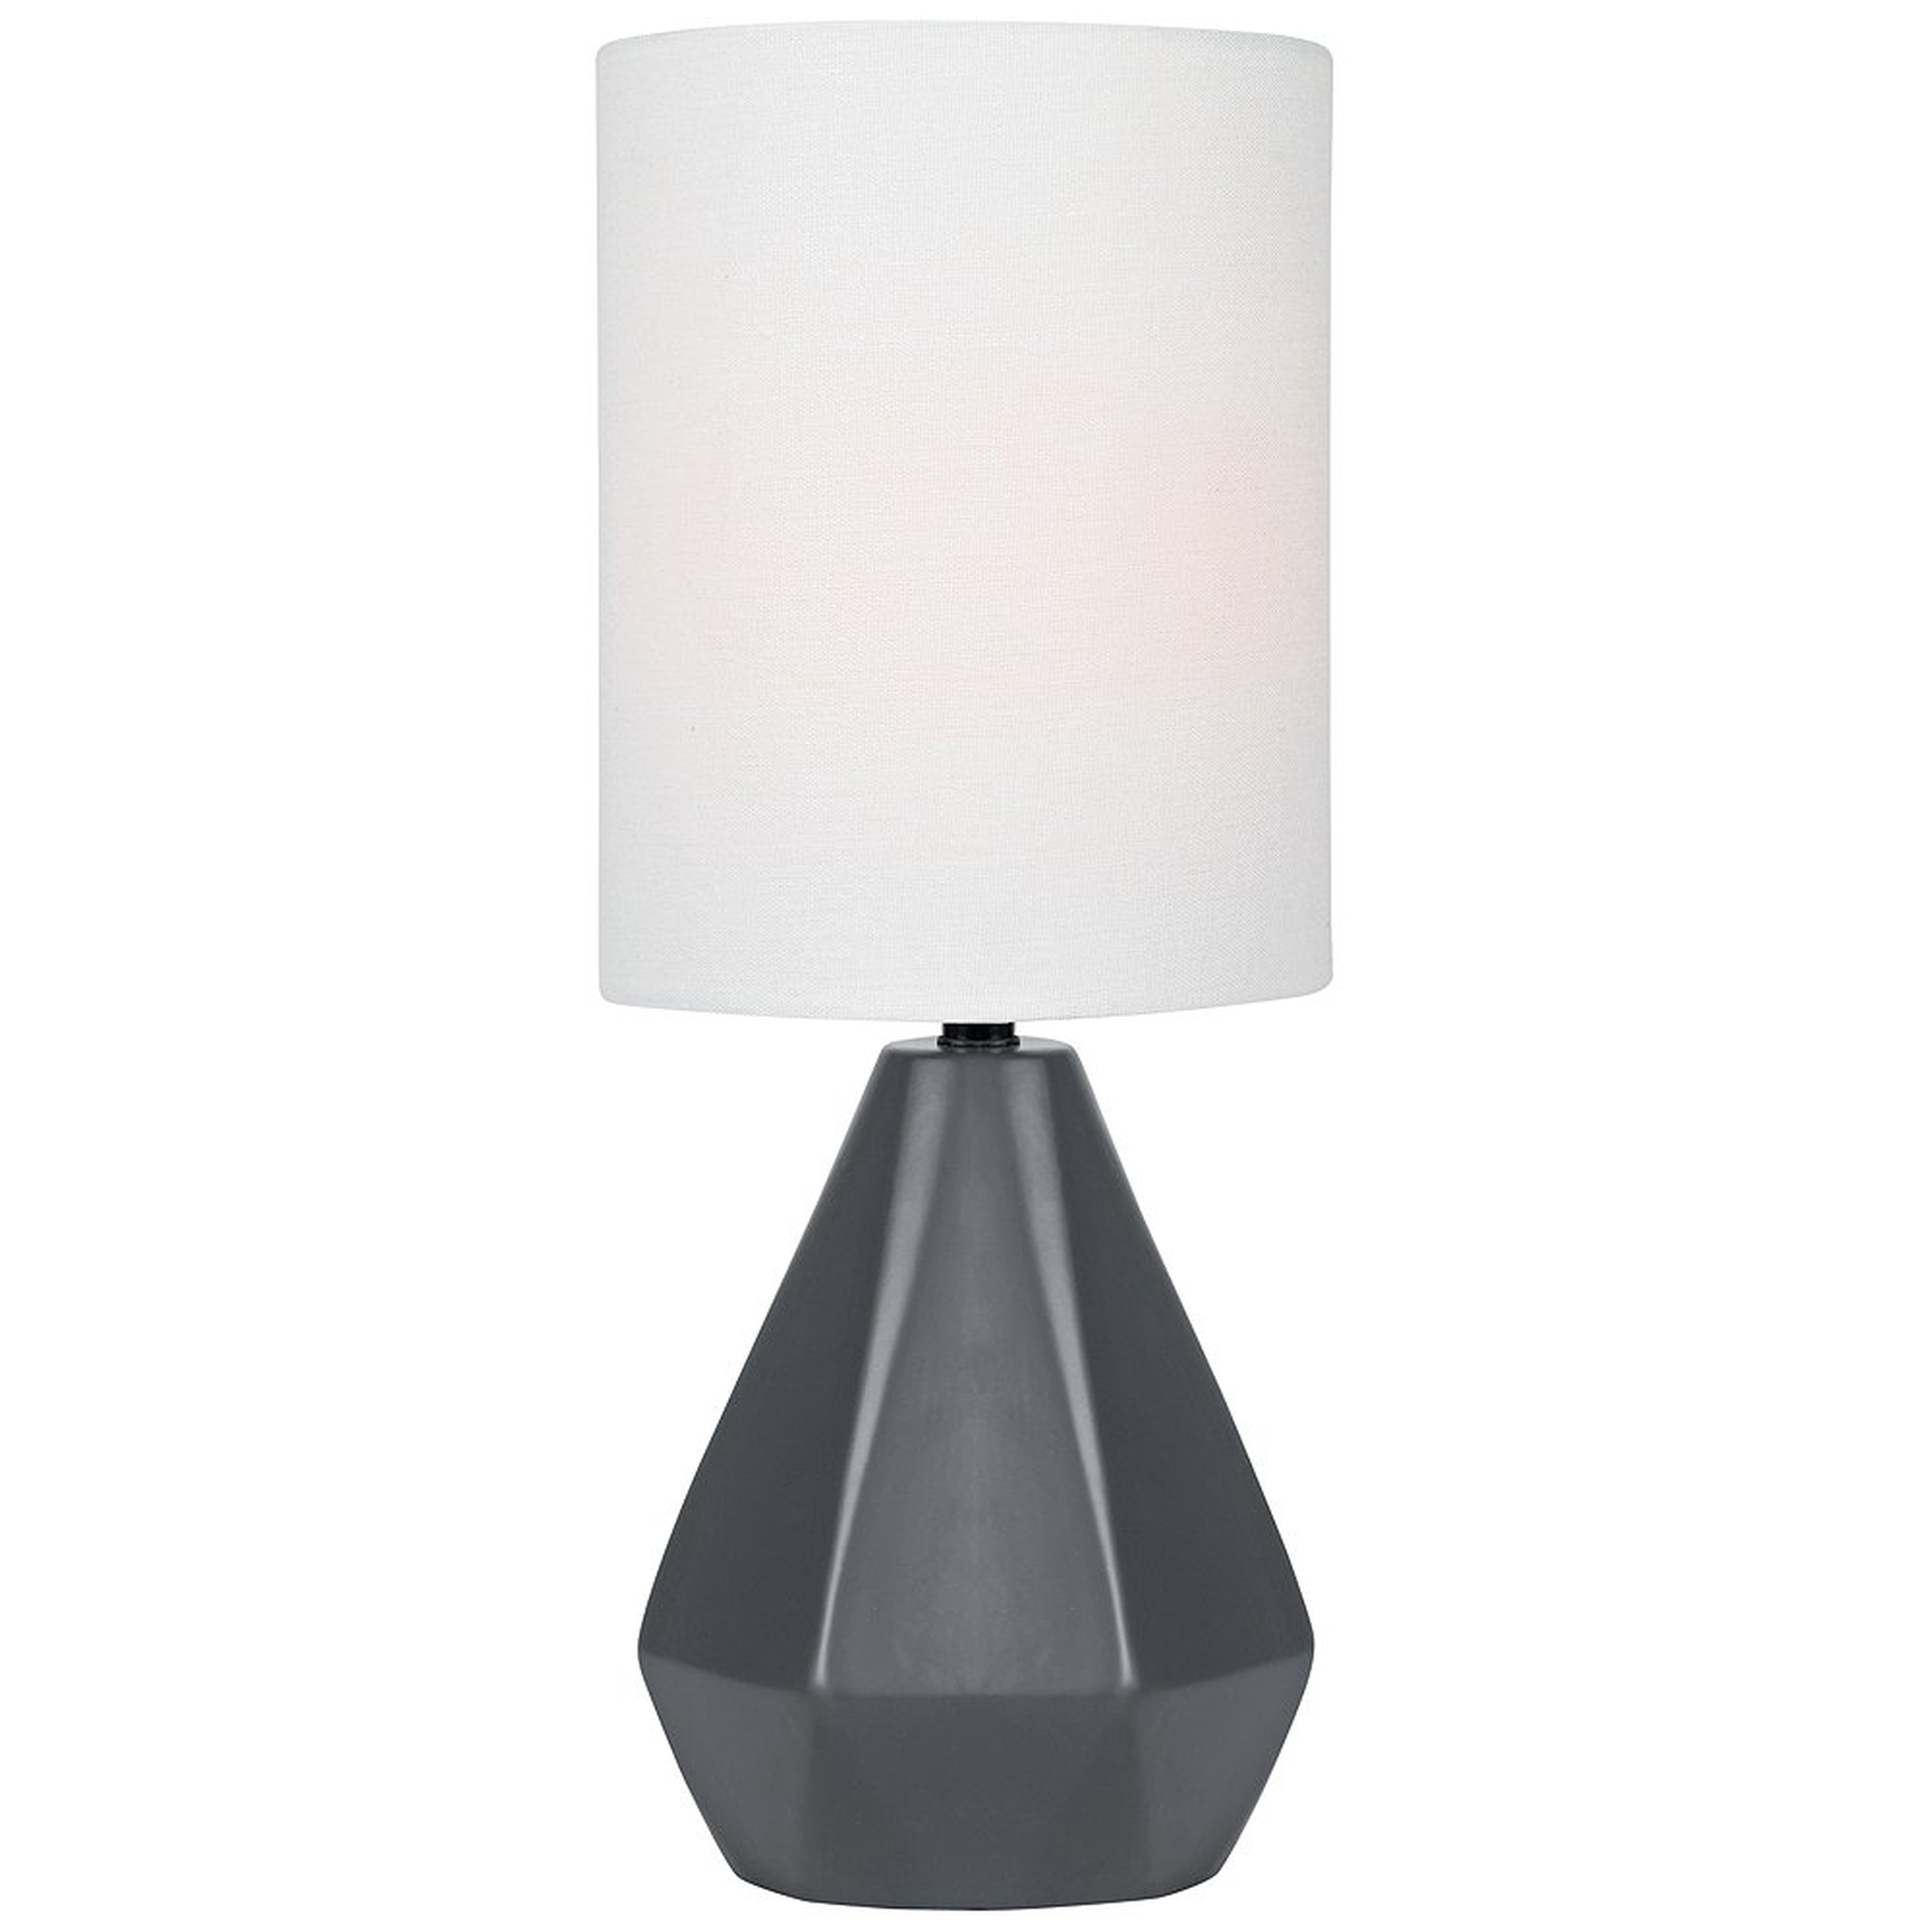 Lite Source Mason 17"H Jet Black Ceramic Accent Table Lamp - Style # 56J76 - Lamps Plus